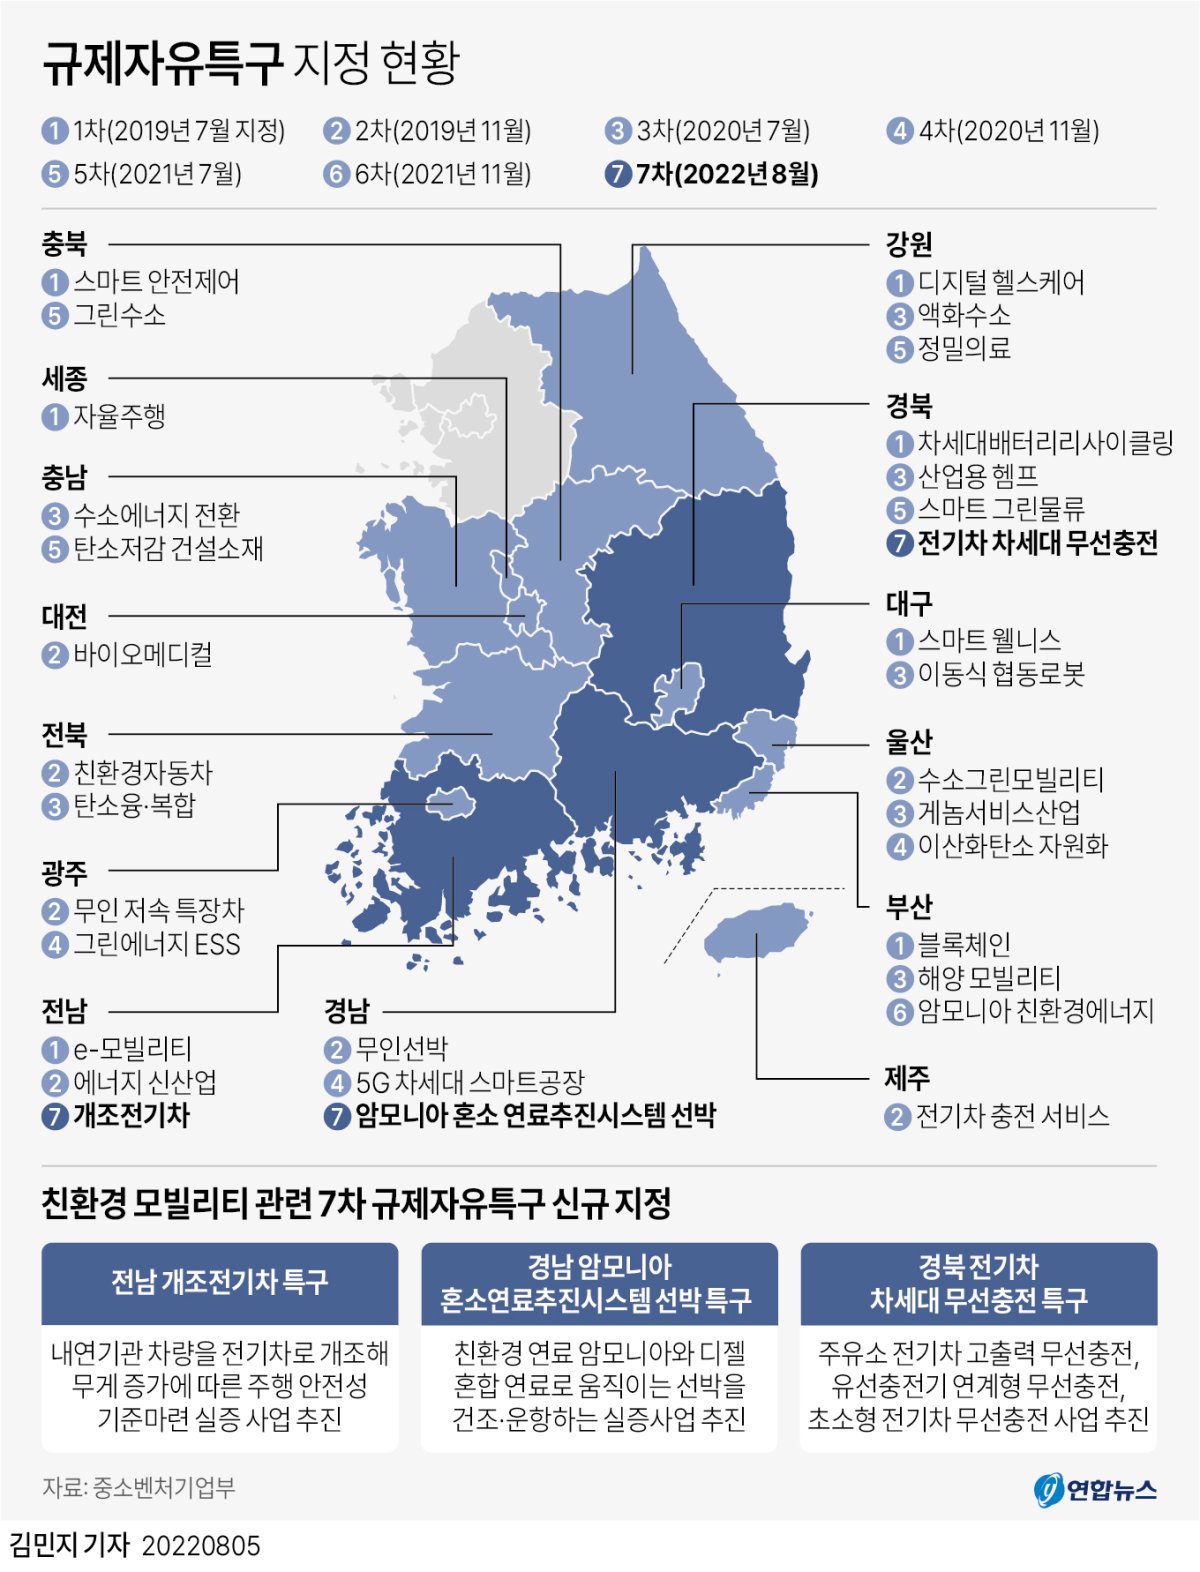 [그래픽] 규제자유특구 지정 현황